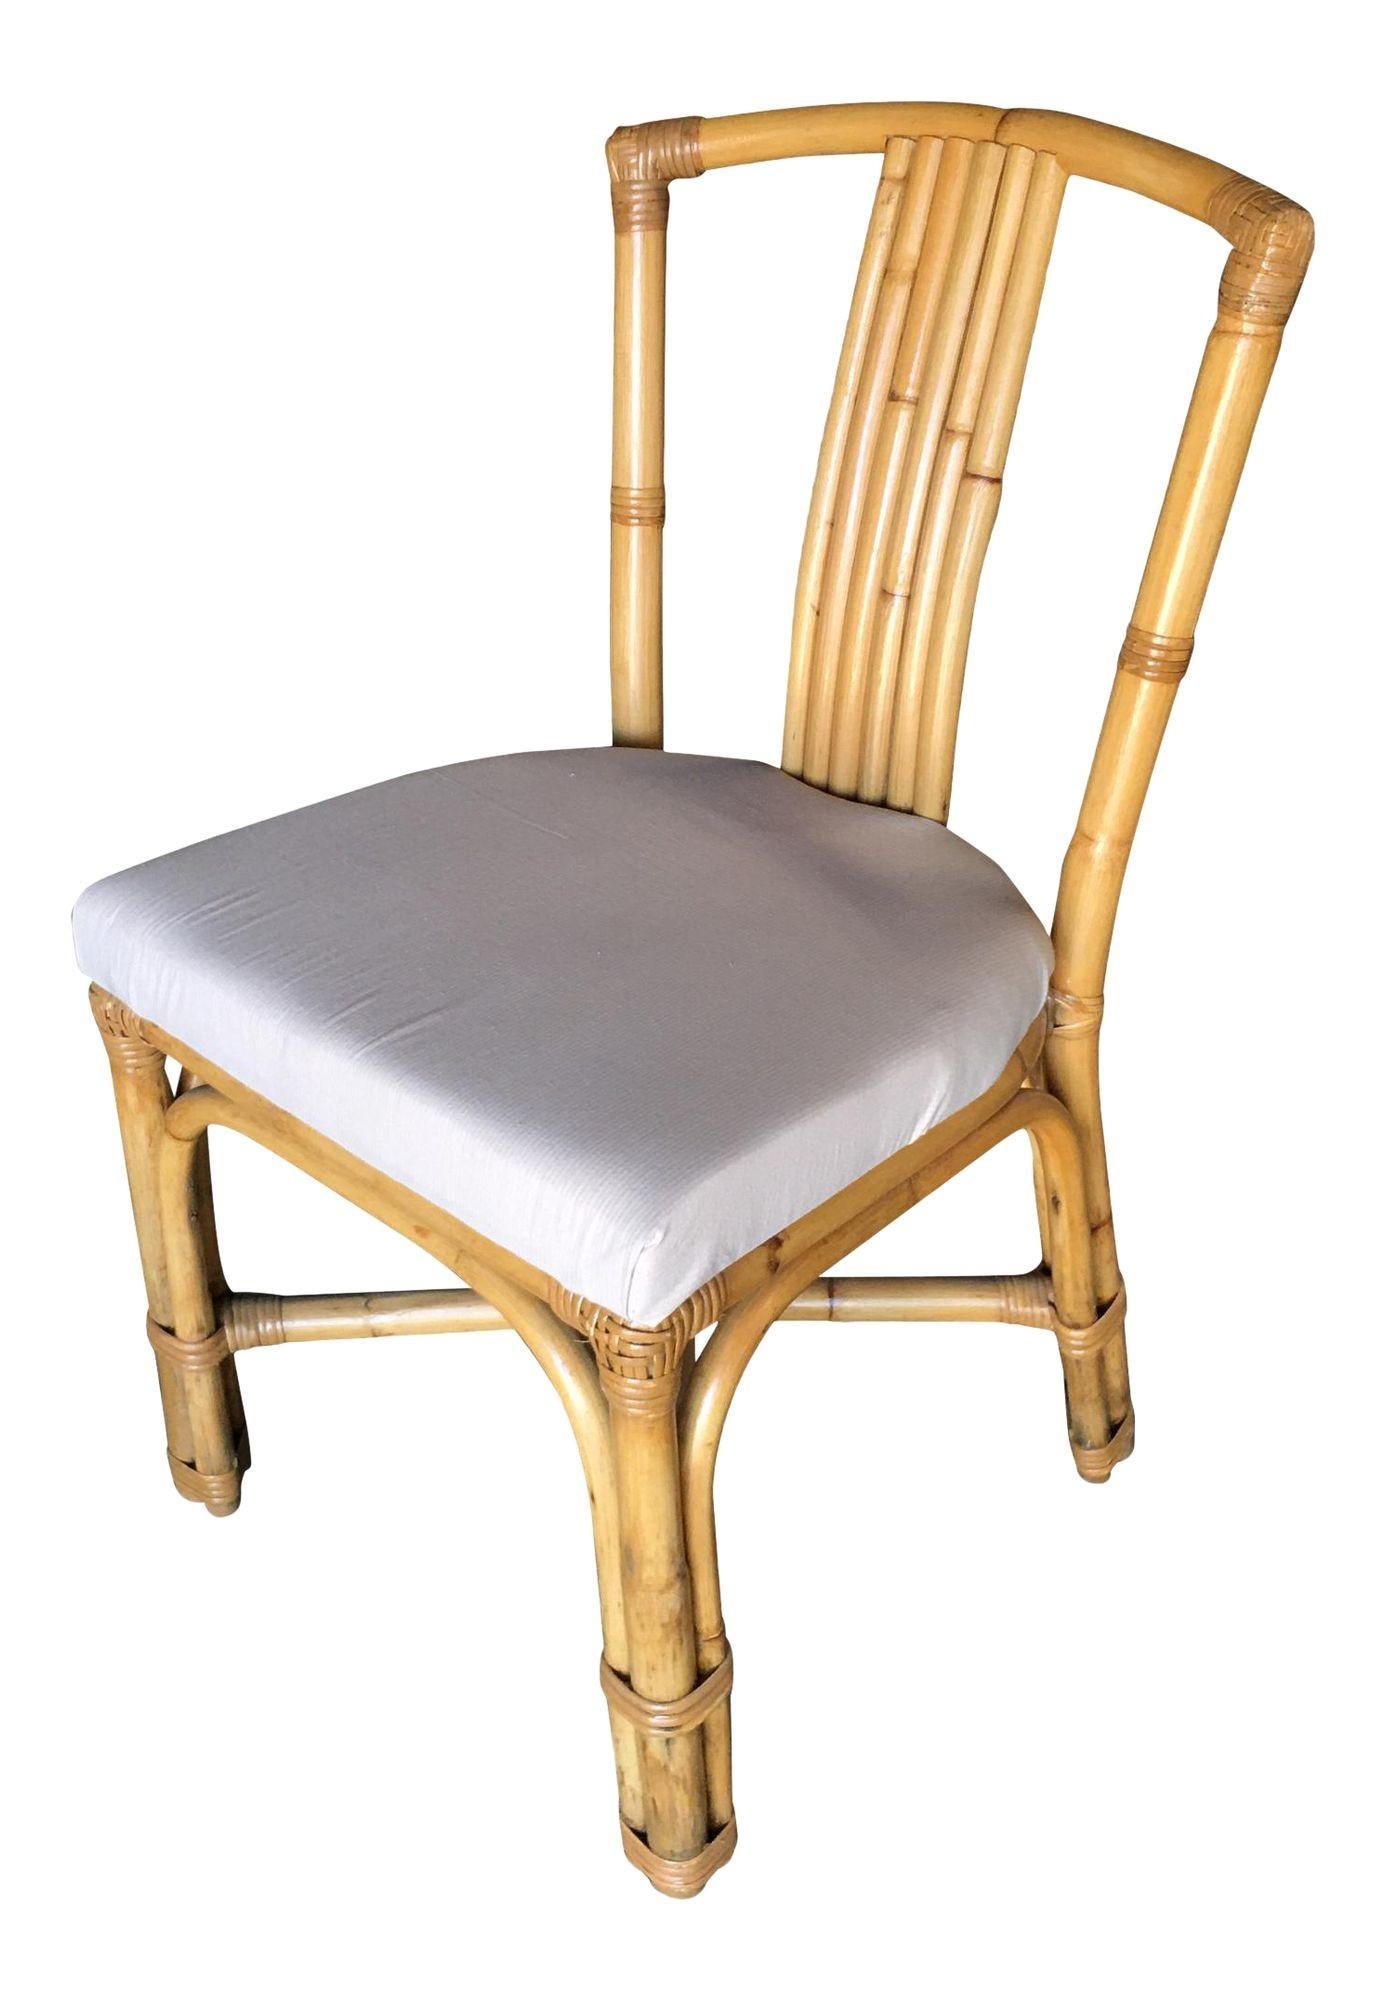 Beistellstuhl aus Rattan im Vintage-Stil, mit 6-strängiger Rückenlehne und gepolstertem Sitz aus weißem Baumwollstoff. Für Sie wie neu restauriert. 

1950, Vereinigte Staaten

Wir kaufen und verkaufen nur die besten und feinsten Rattanmöbel, die von